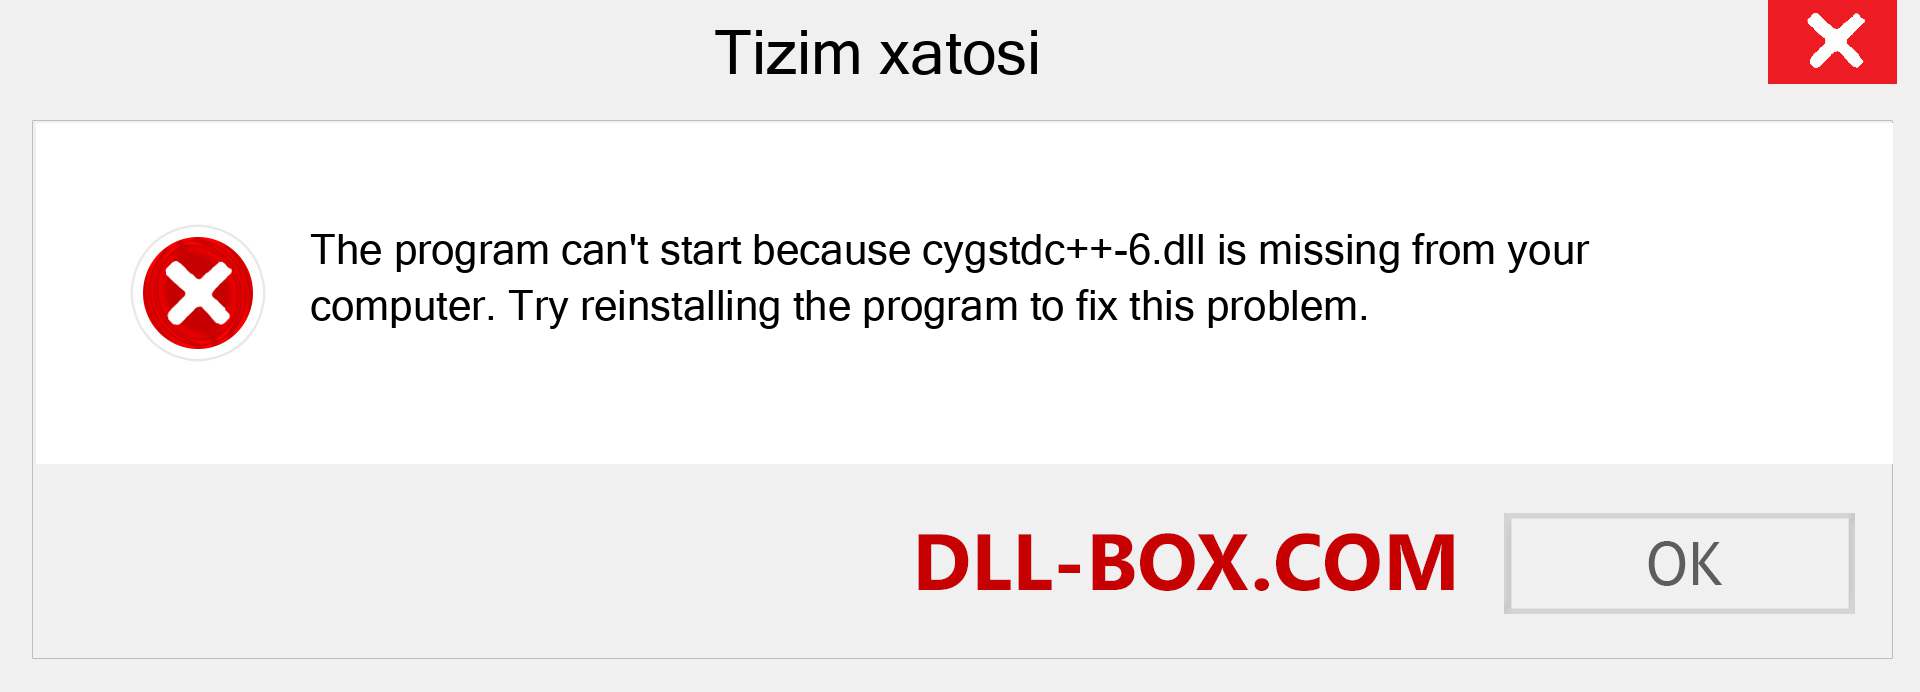 cygstdc++-6.dll fayli yo'qolganmi?. Windows 7, 8, 10 uchun yuklab olish - Windowsda cygstdc++-6 dll etishmayotgan xatoni tuzating, rasmlar, rasmlar